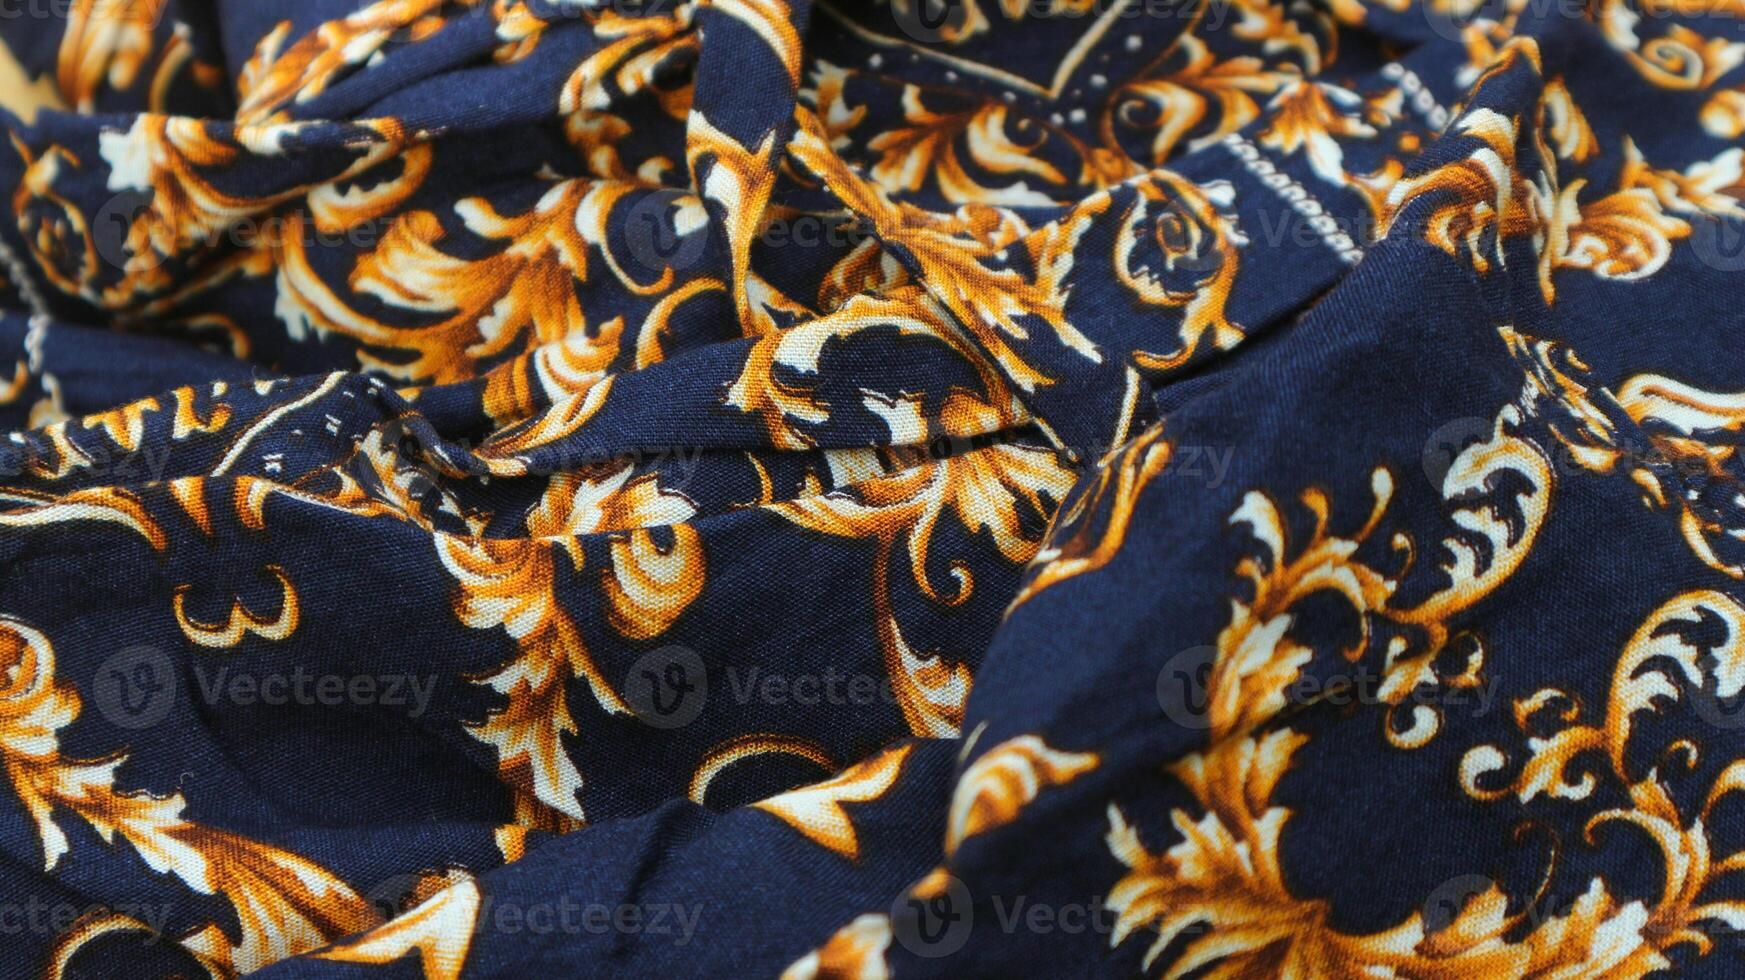 een traditioneel Indonesisch kleding stof, namelijk batik kleding welke heeft uniek en verschillend patronen en beeld motieven voor elk regio. cultureel thema foto's, typisch van Azië. foto